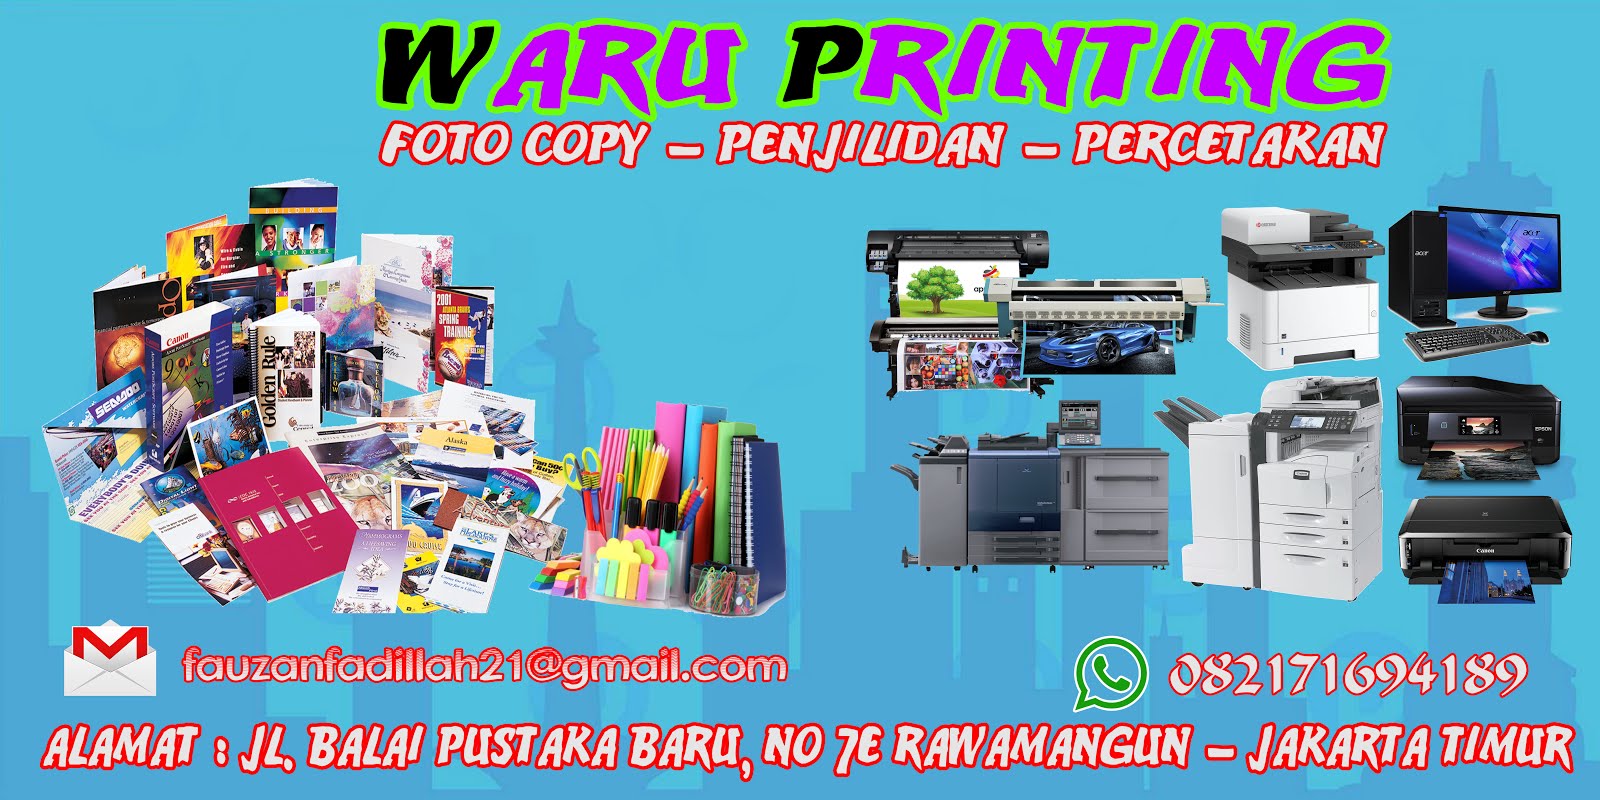 Bikin Spanduk Kilat Murah Jakarta Waru Printing